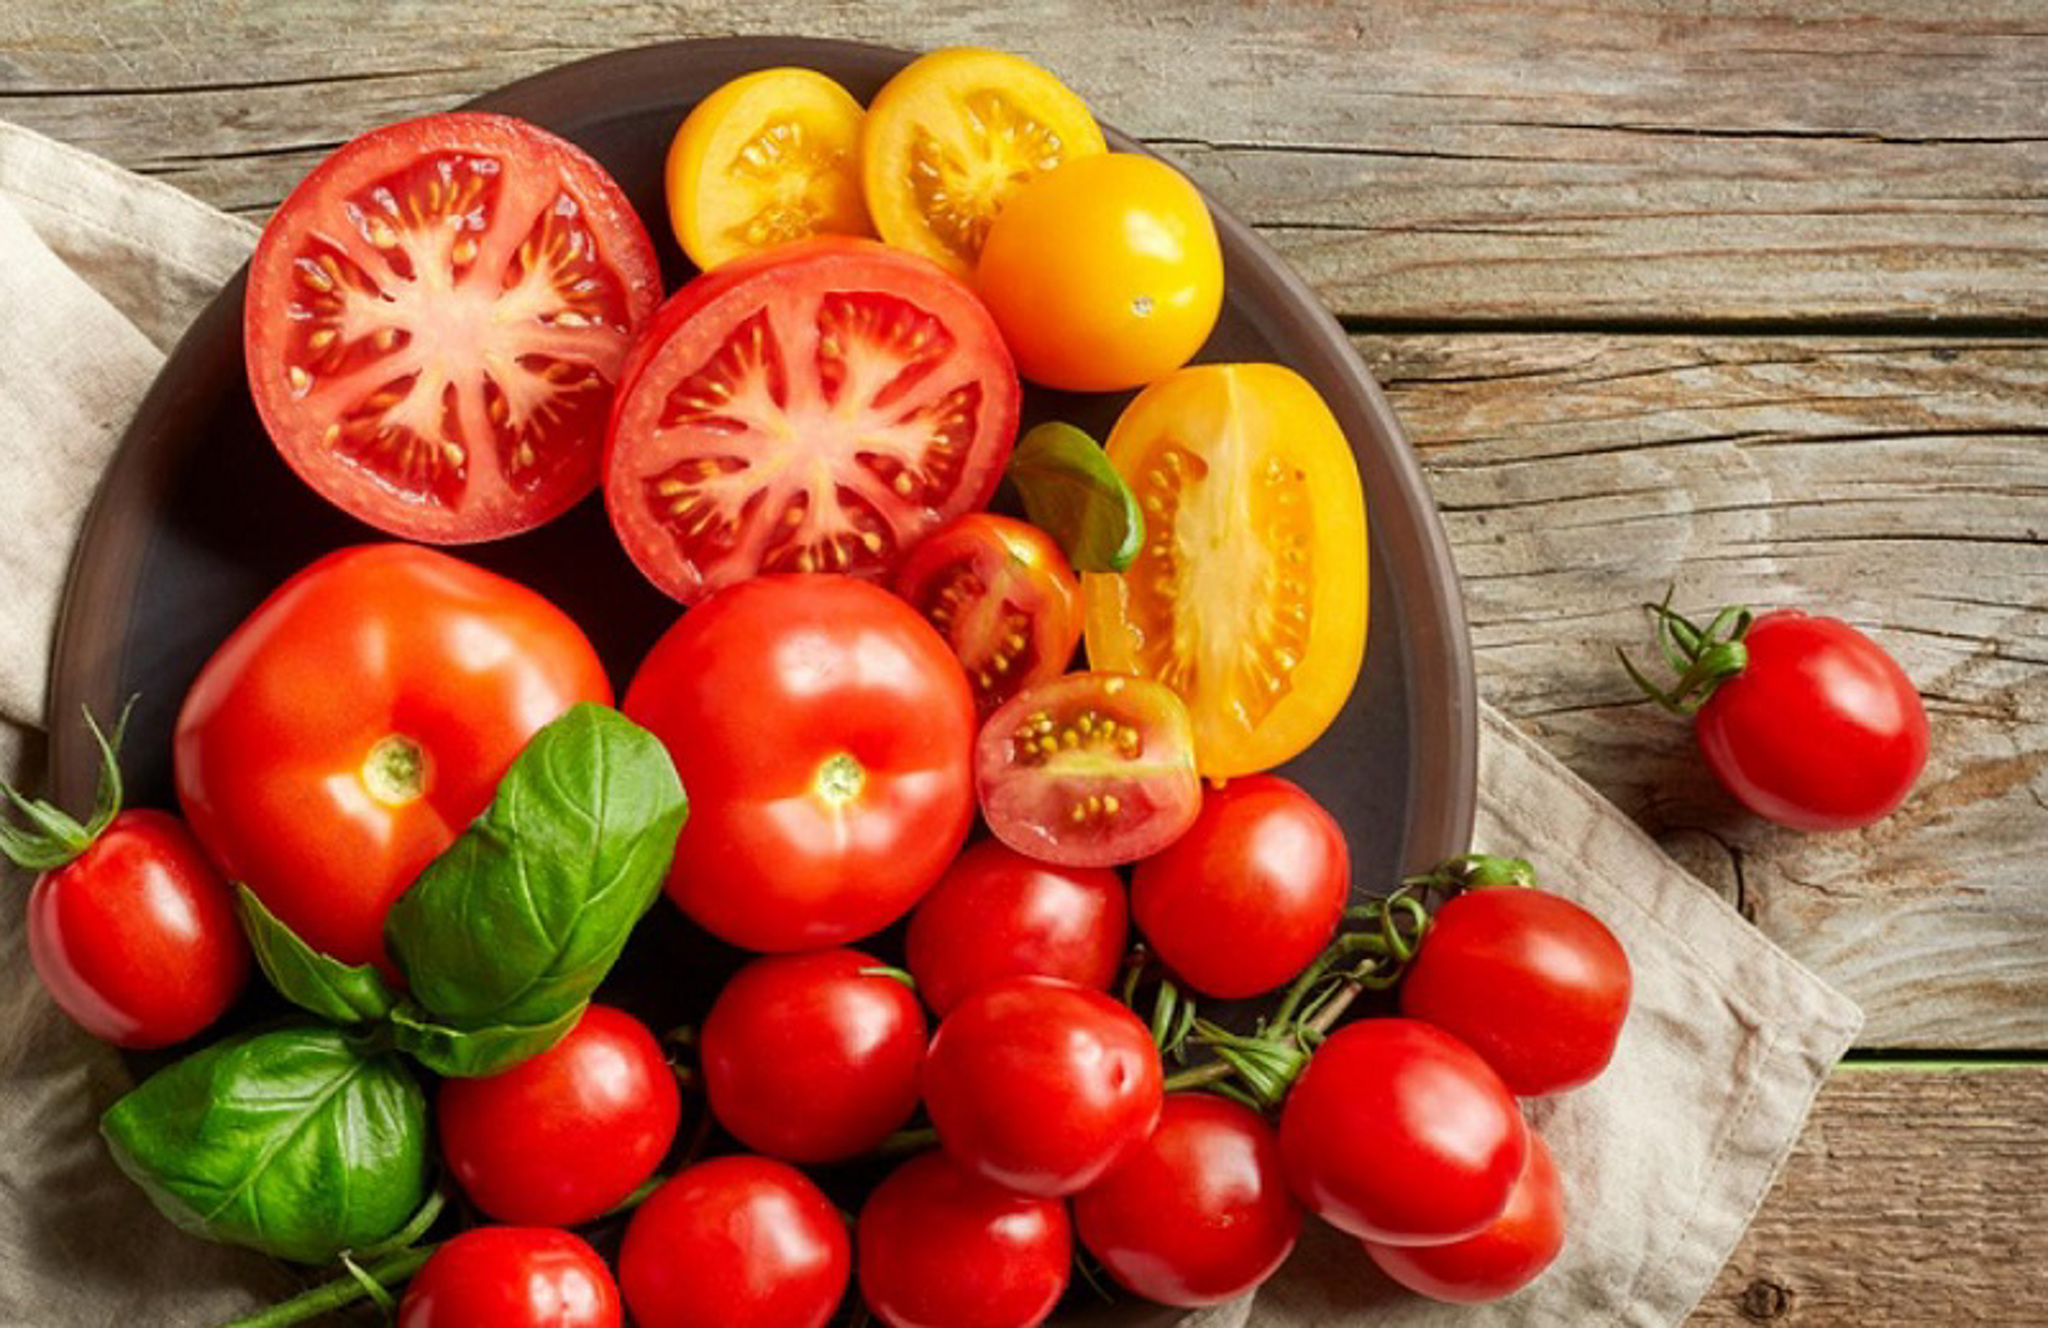 Trái cà chua là nguyên liệu làm đẹp da rất phổ biến